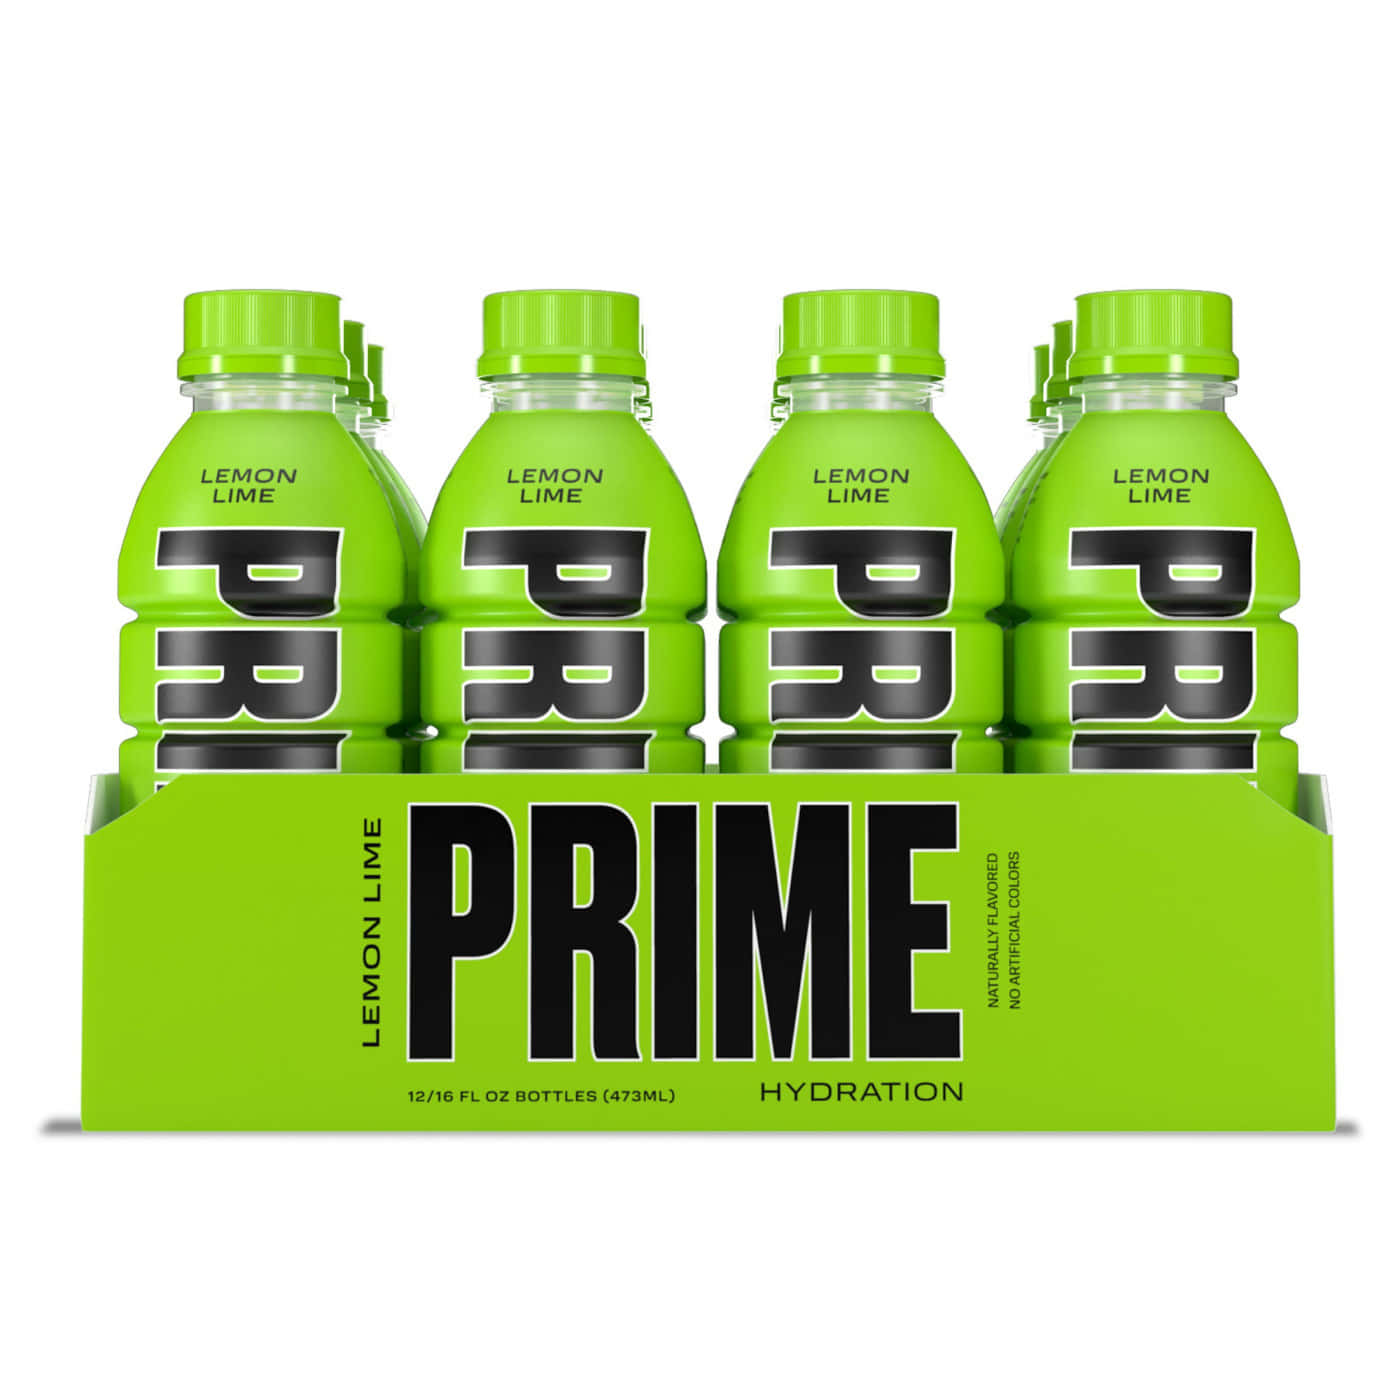 Prime Lemon Lime Hydration Drink Bottles Wallpaper